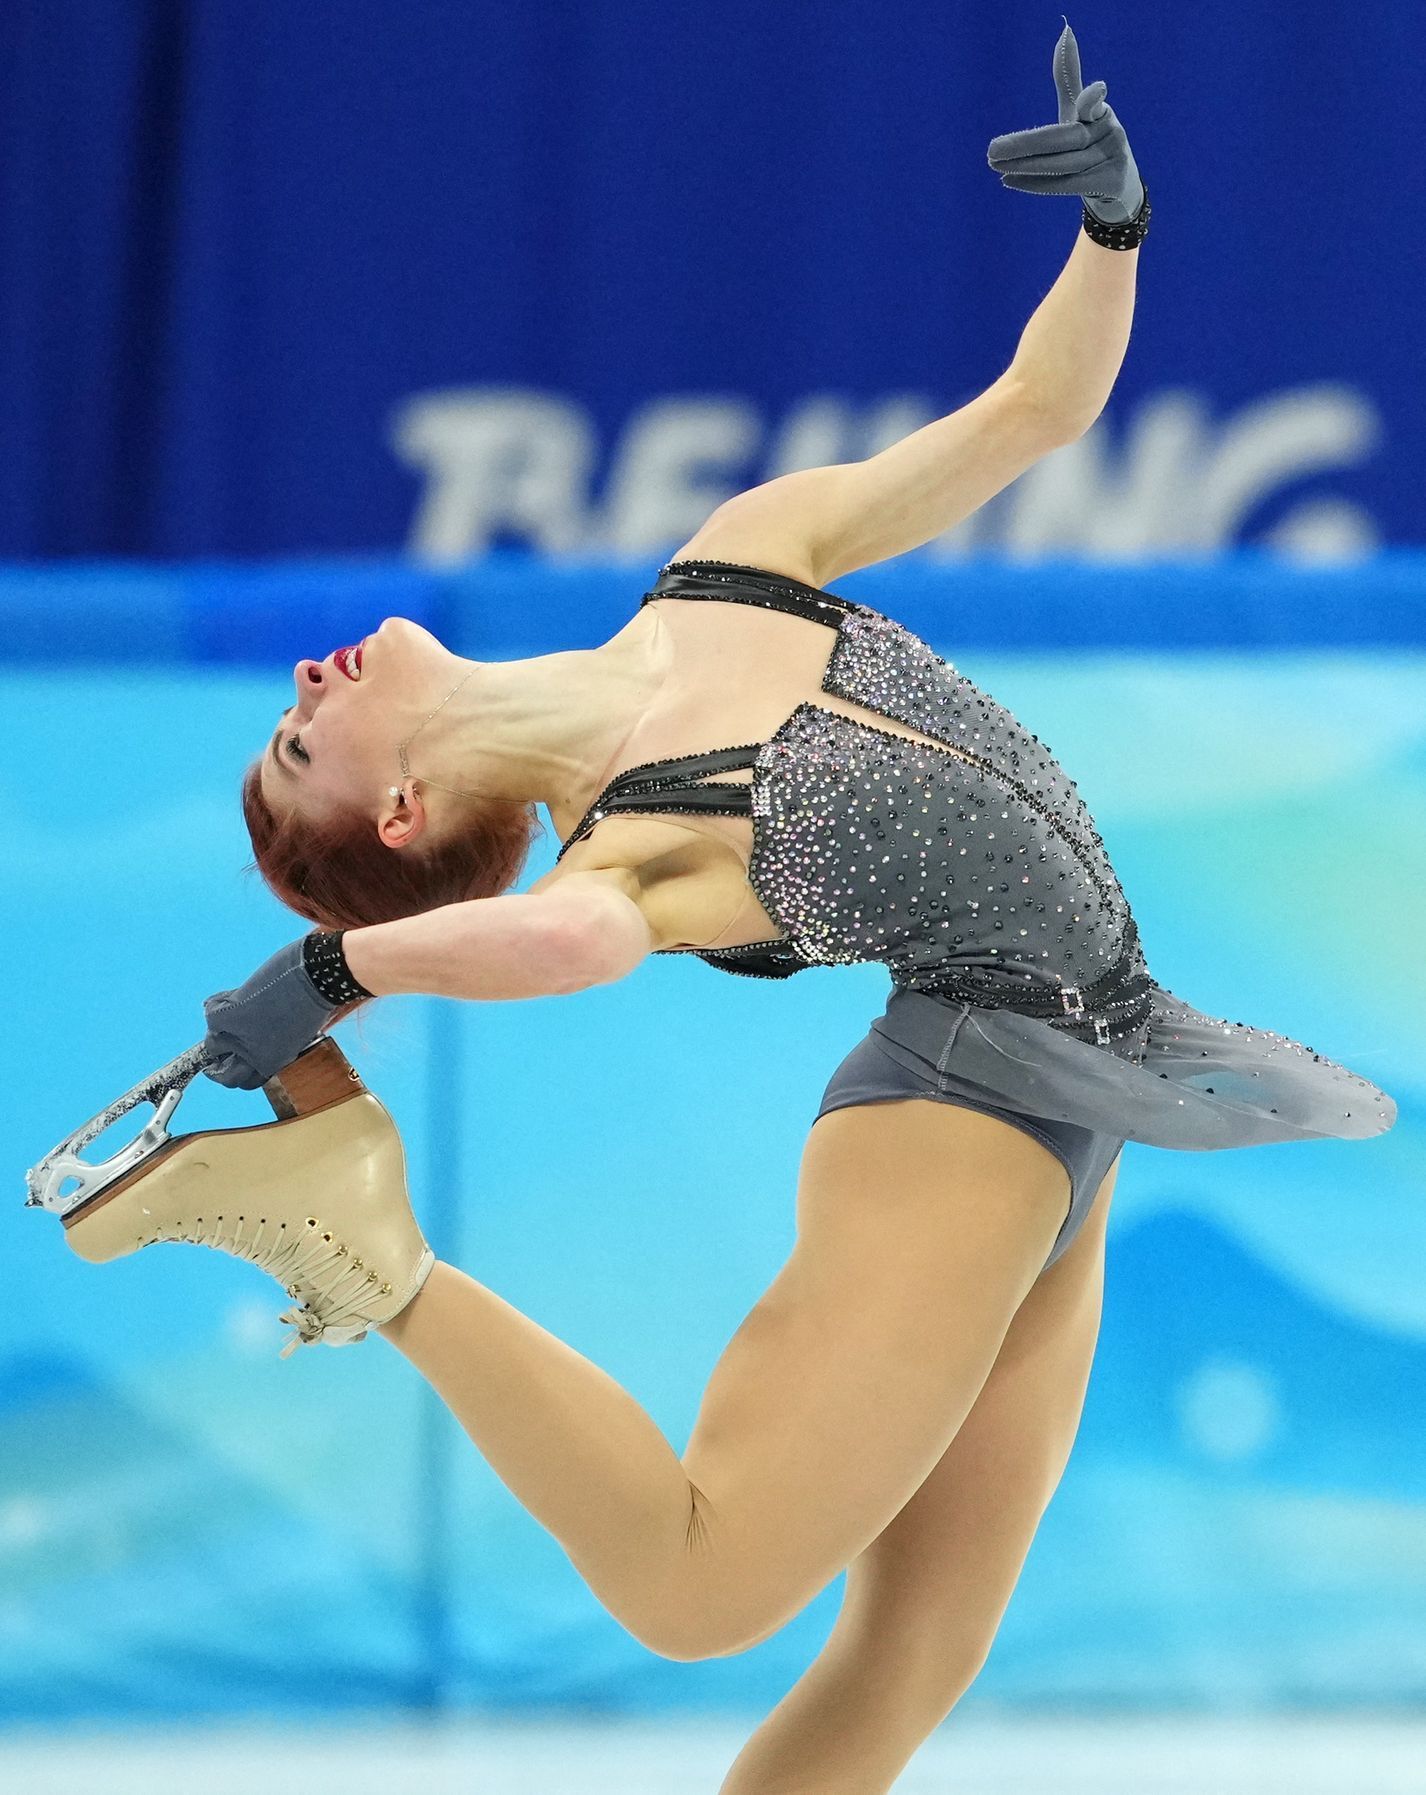 Eliška Březinová v krátkém programu týmové soutěže na ZOH 2022 v Pekingu